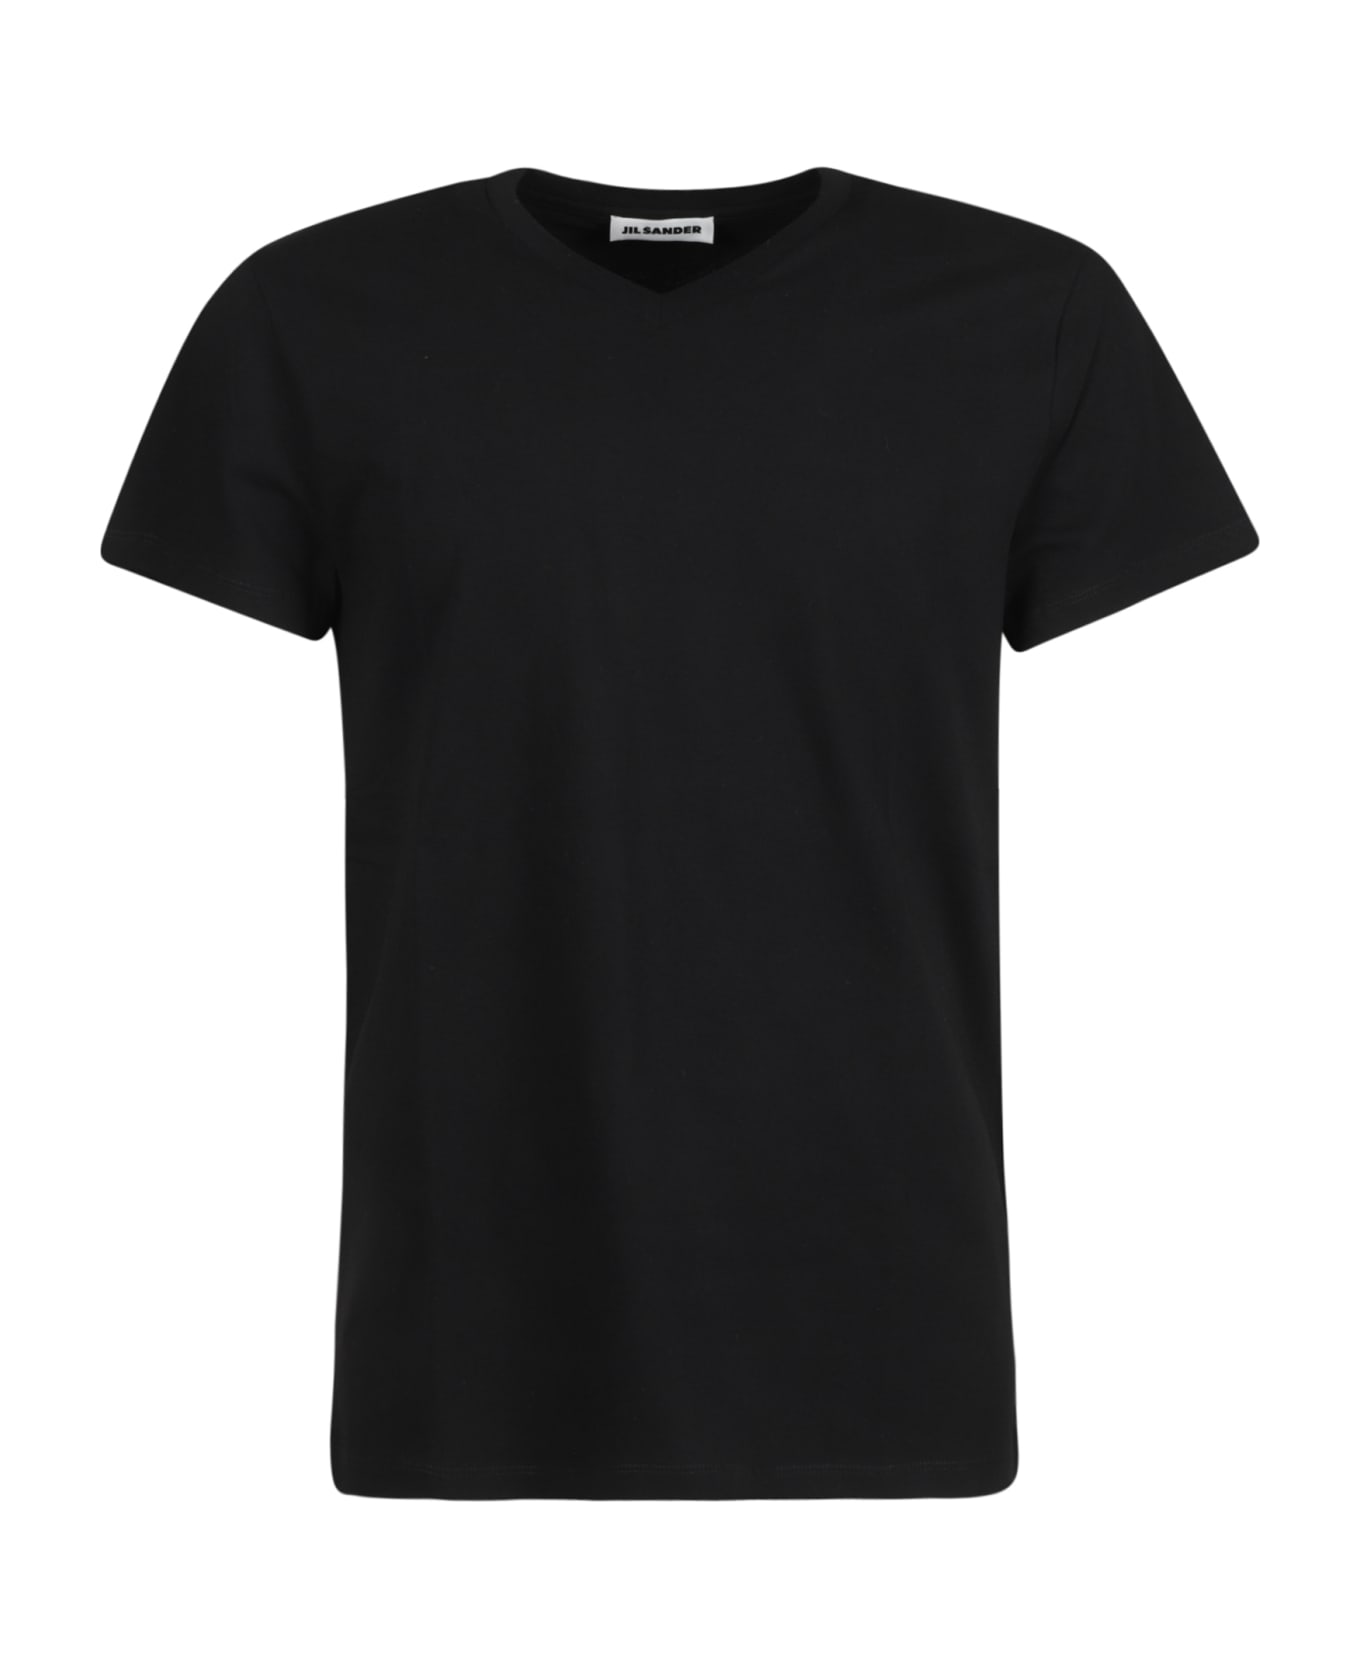 Jil Sander V-neck T-shirt - Black